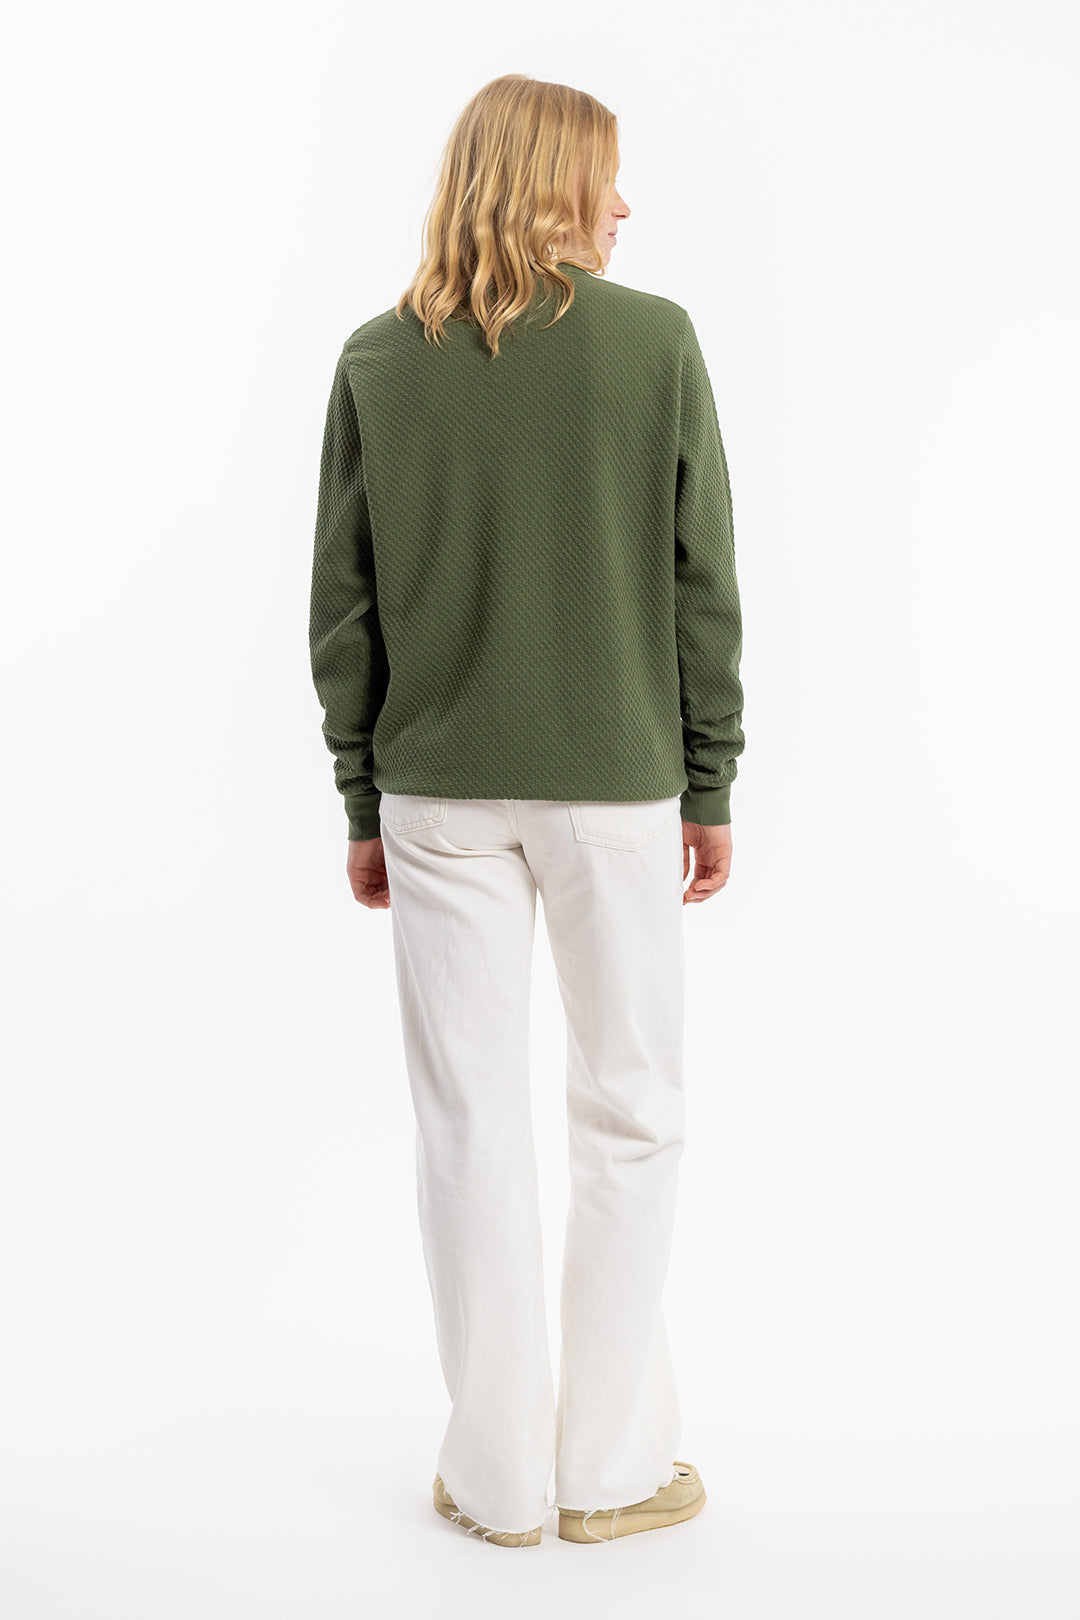 Grüner Sweater Waffel aus 100% Bio Baumwolle von Rotholz